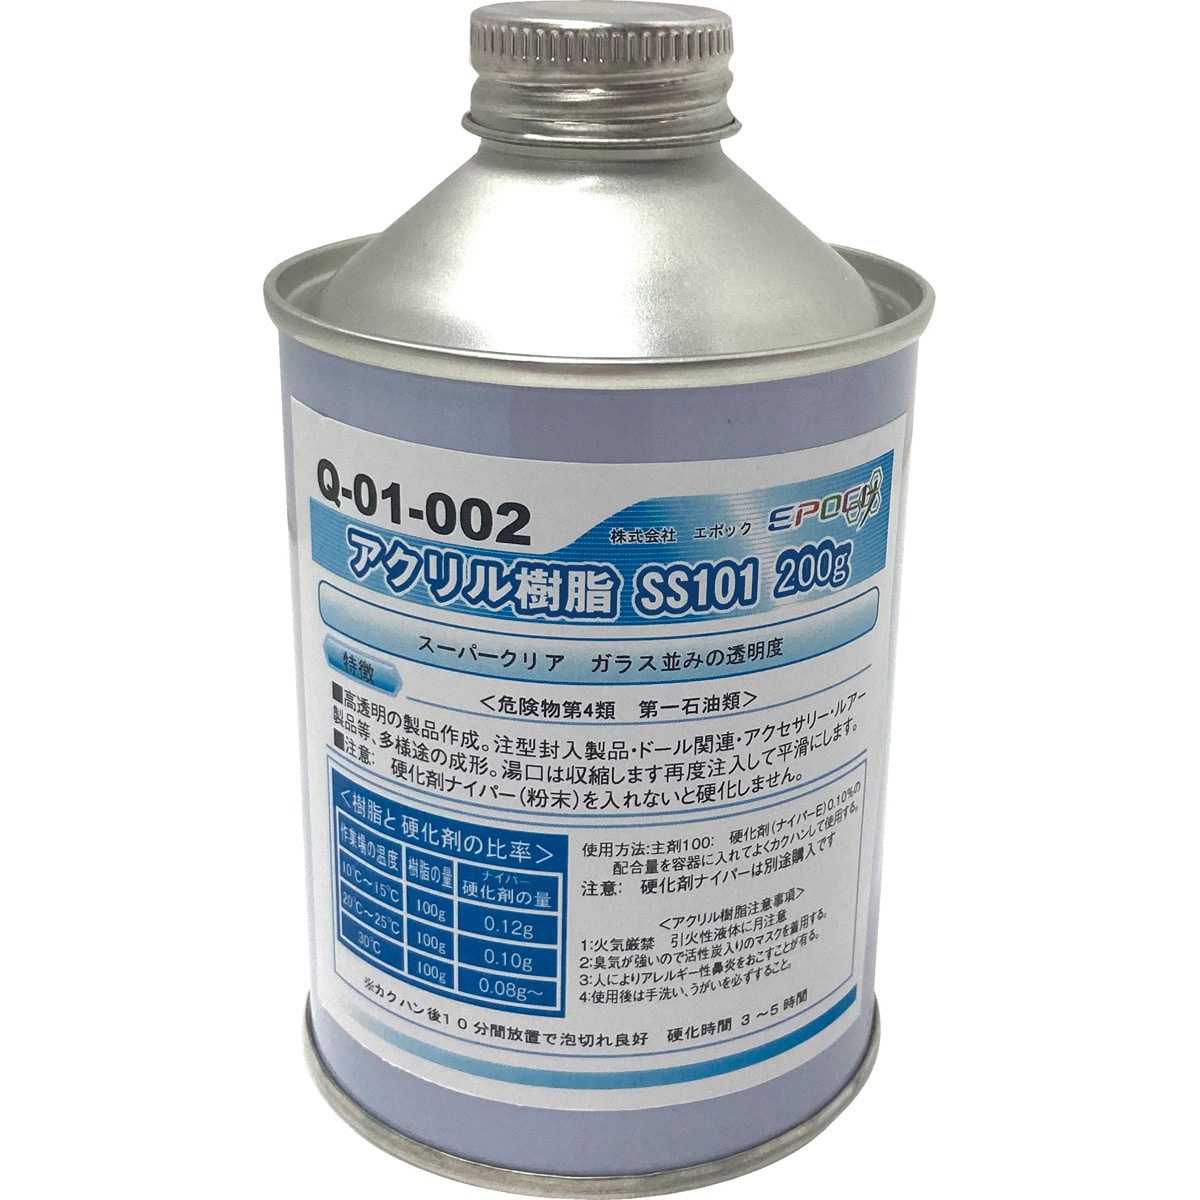 Q-01-002 アクリル樹脂 SS-101スーパークリア 主剤 1缶(200g